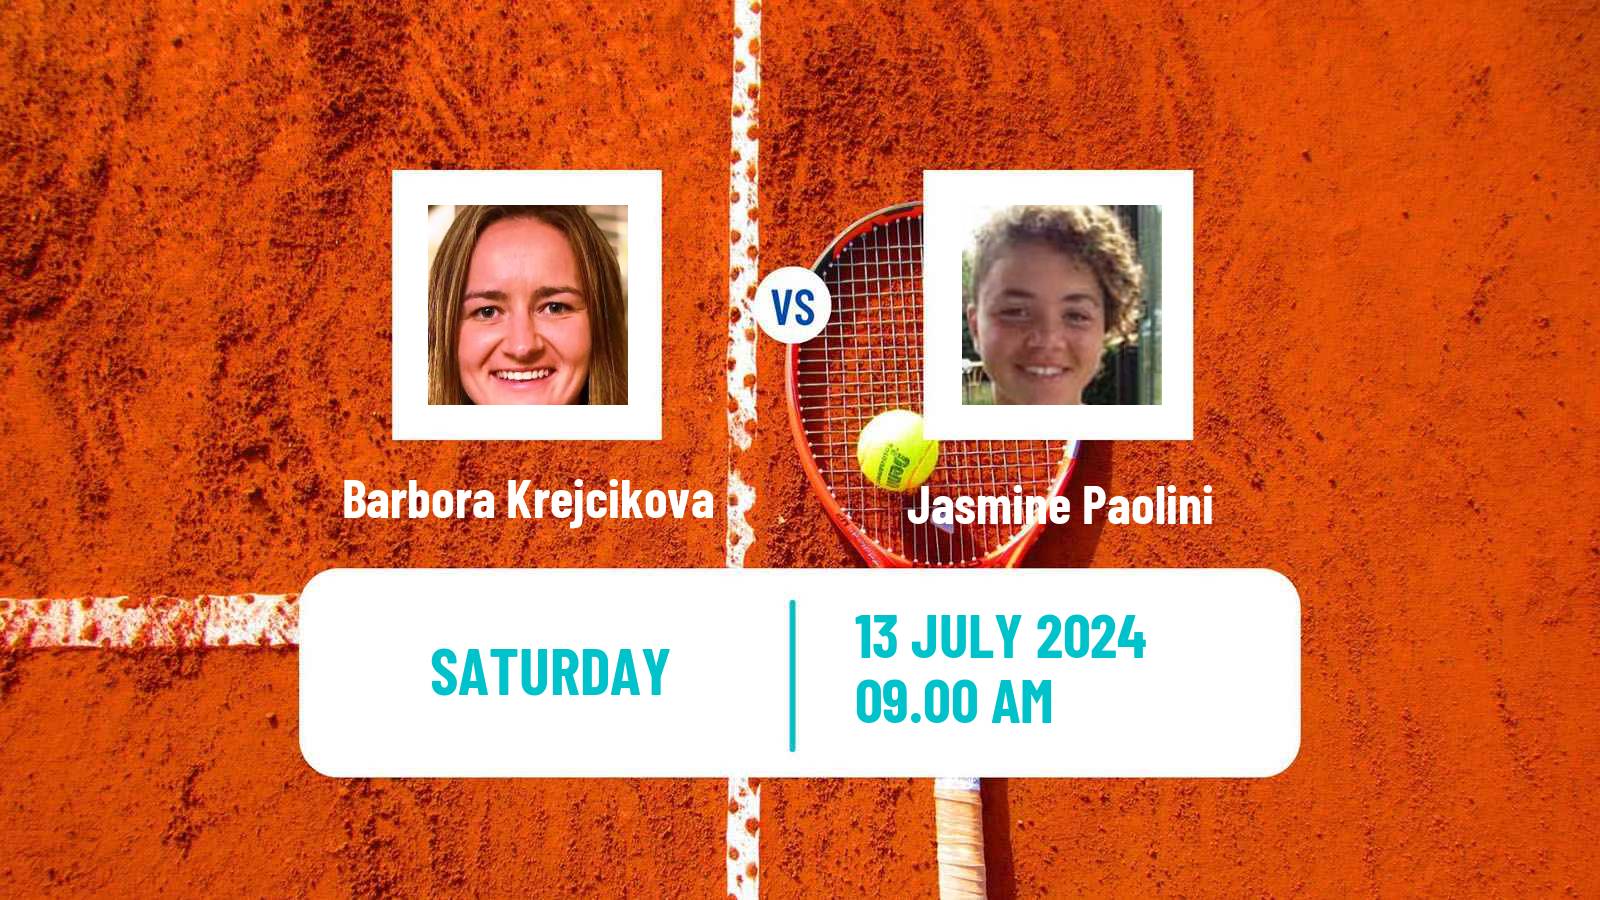 Tennis WTA Wimbledon Barbora Krejcikova - Jasmine Paolini